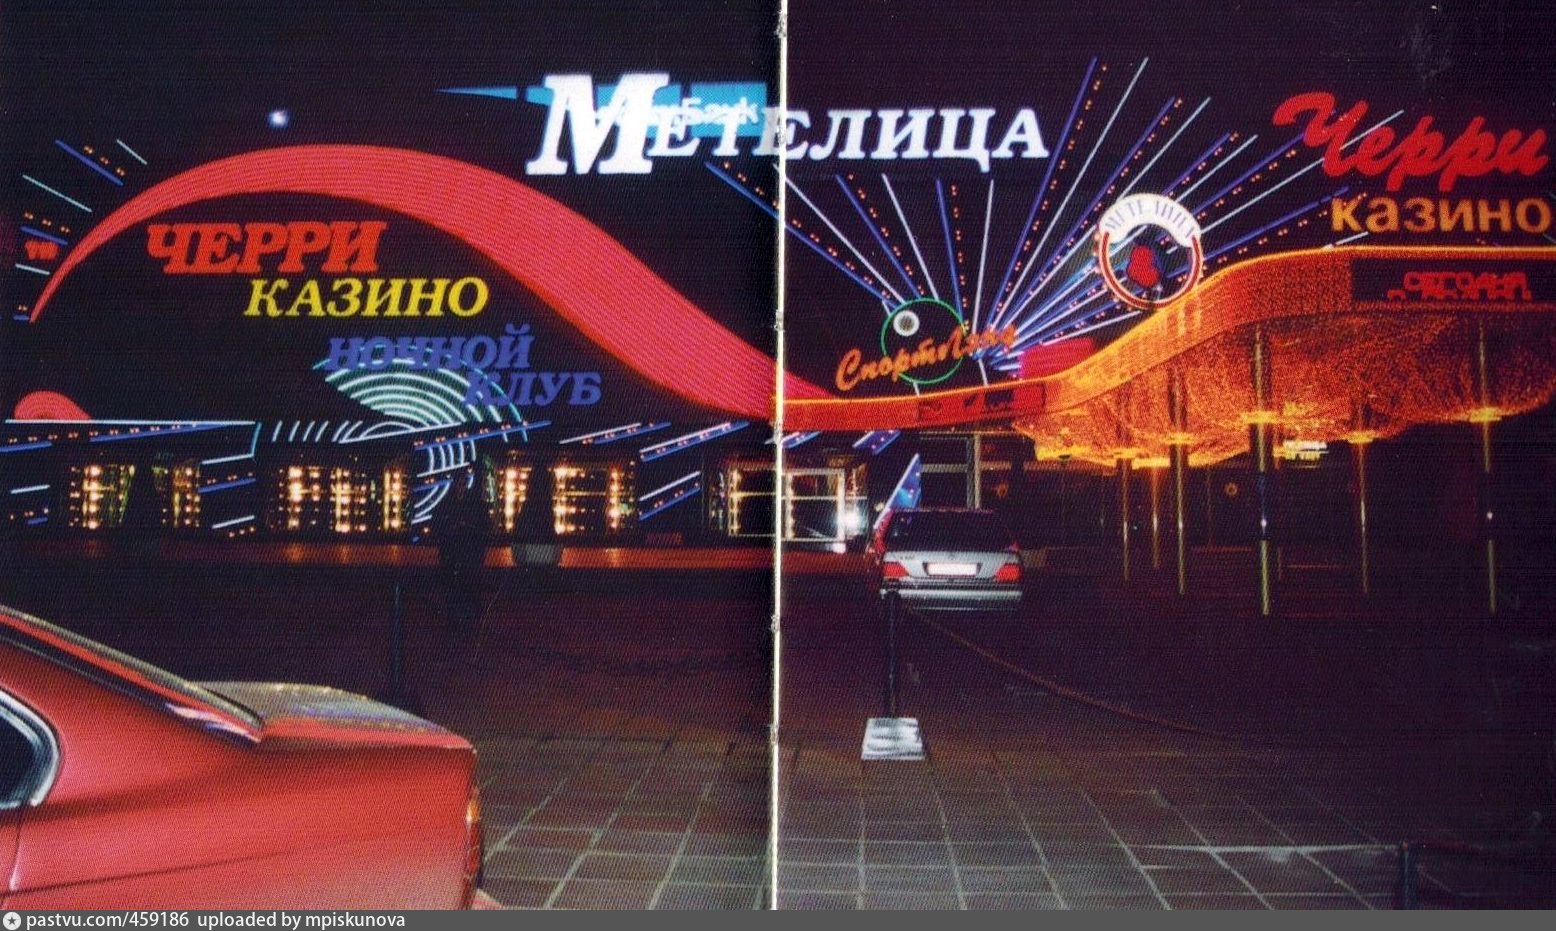 Ресторан Метелица Москва в 90-х